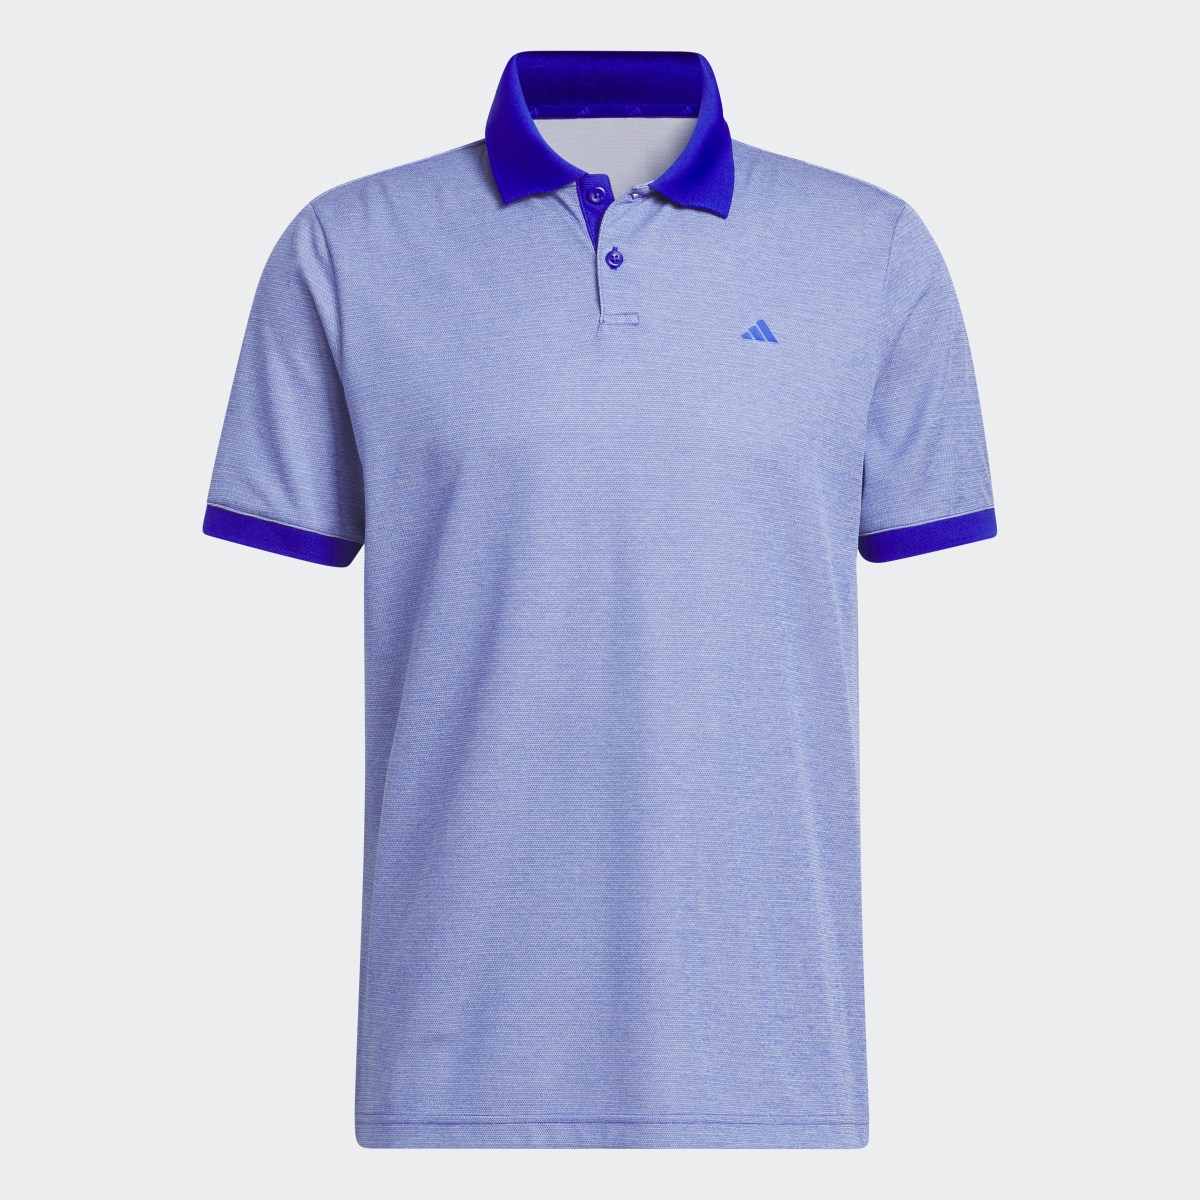 Adidas Ultimate365 No-Show Golf Polo Shirt. 10